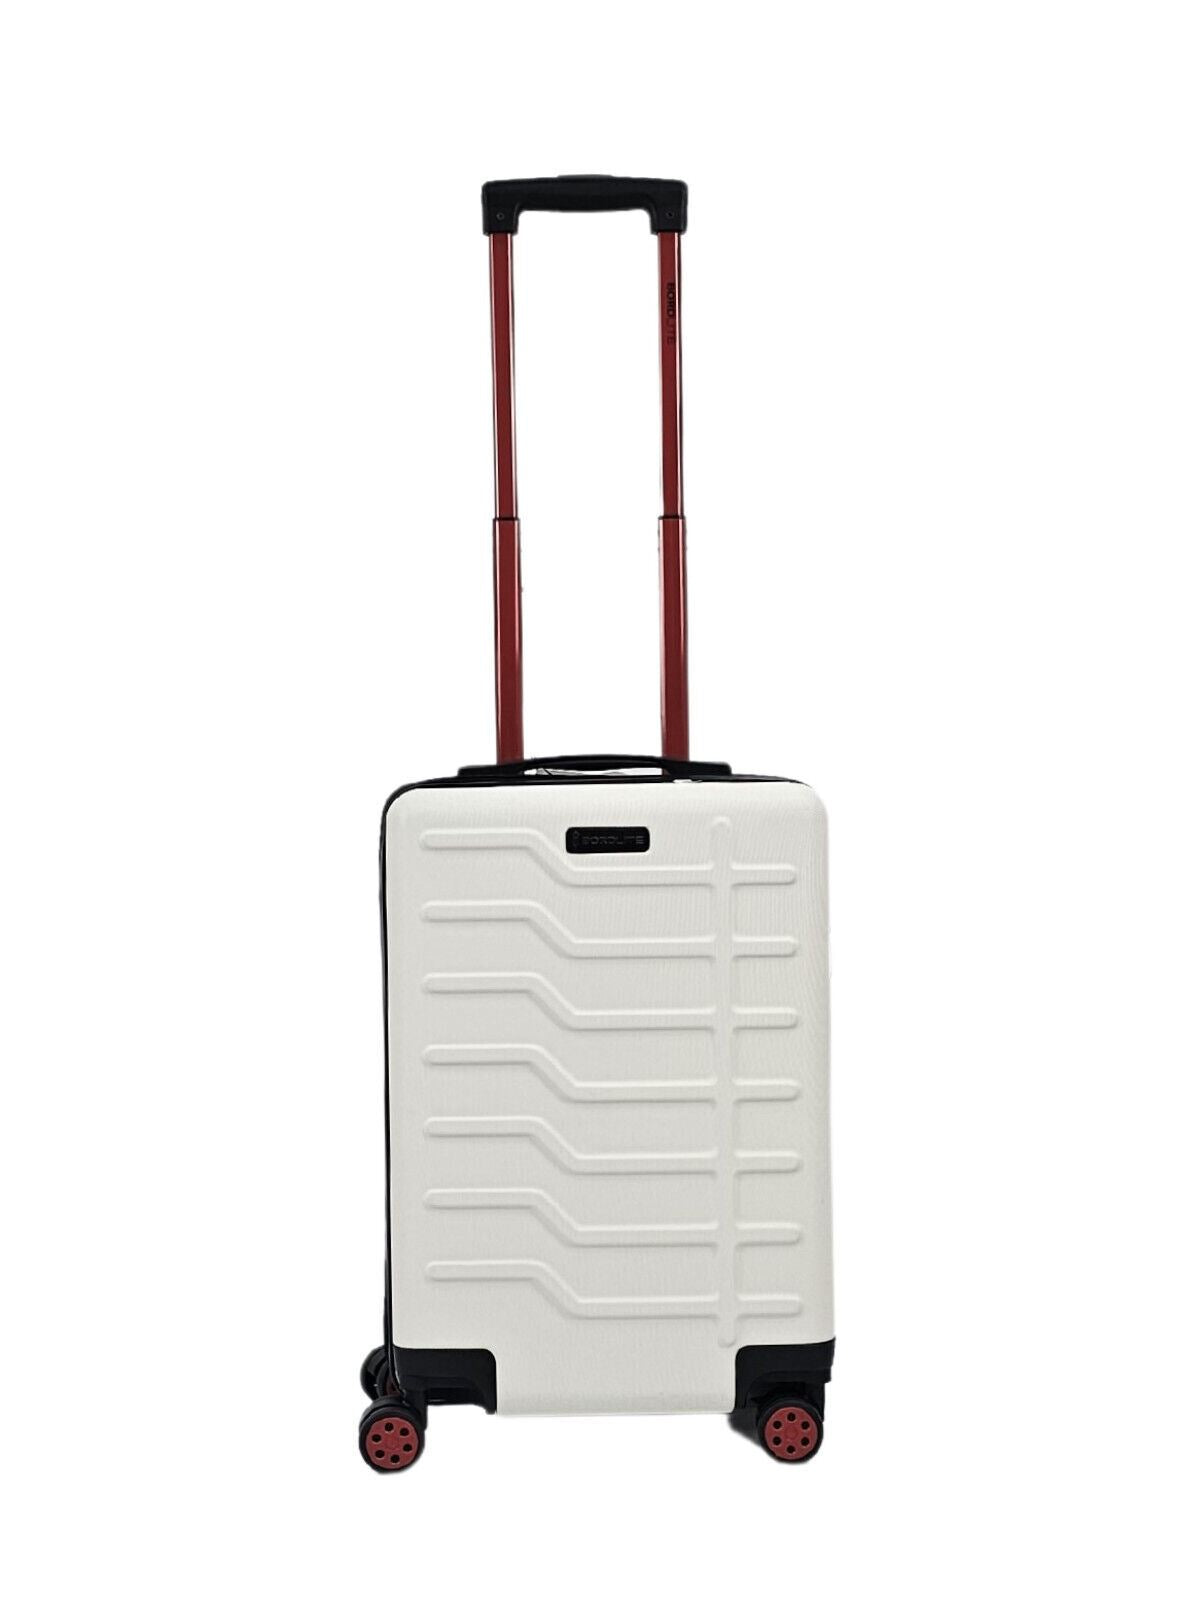 White Hard Shell Classic Suitcase Set 8 Wheel Cabin Luggage Case Holiday Travel